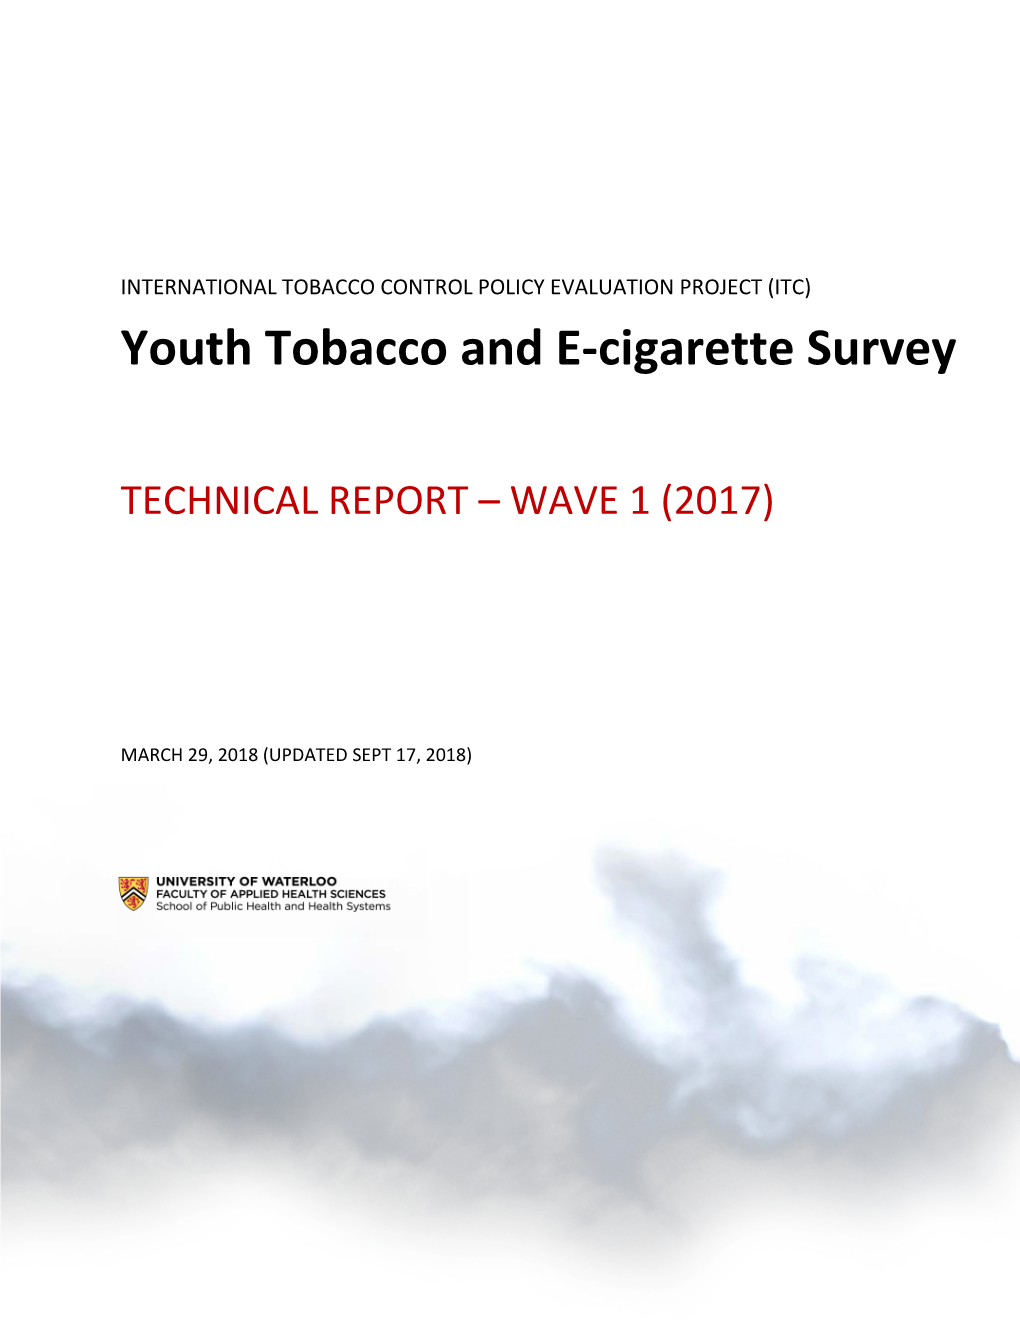 Youth Tobacco and E-Cigarette Survey